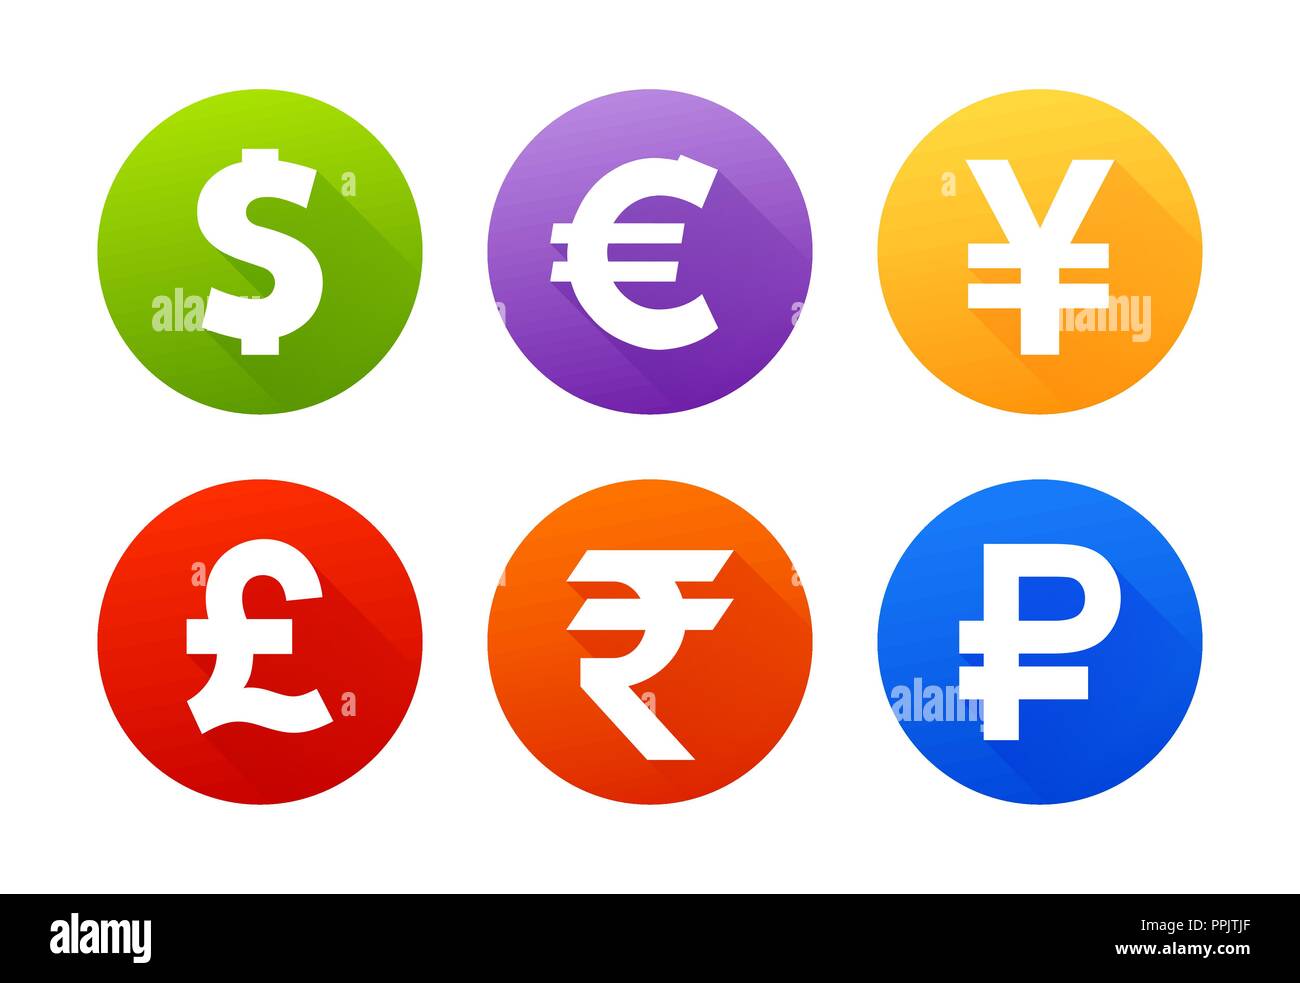 Währung flachbild Vektor Symbol gesetzt. Symbole mit Bildern von verschiedenen Ländern Währungen Dollar, Euro, Pfund Sterling, Yen, Yuan unterzeichnen, Stock Vektor